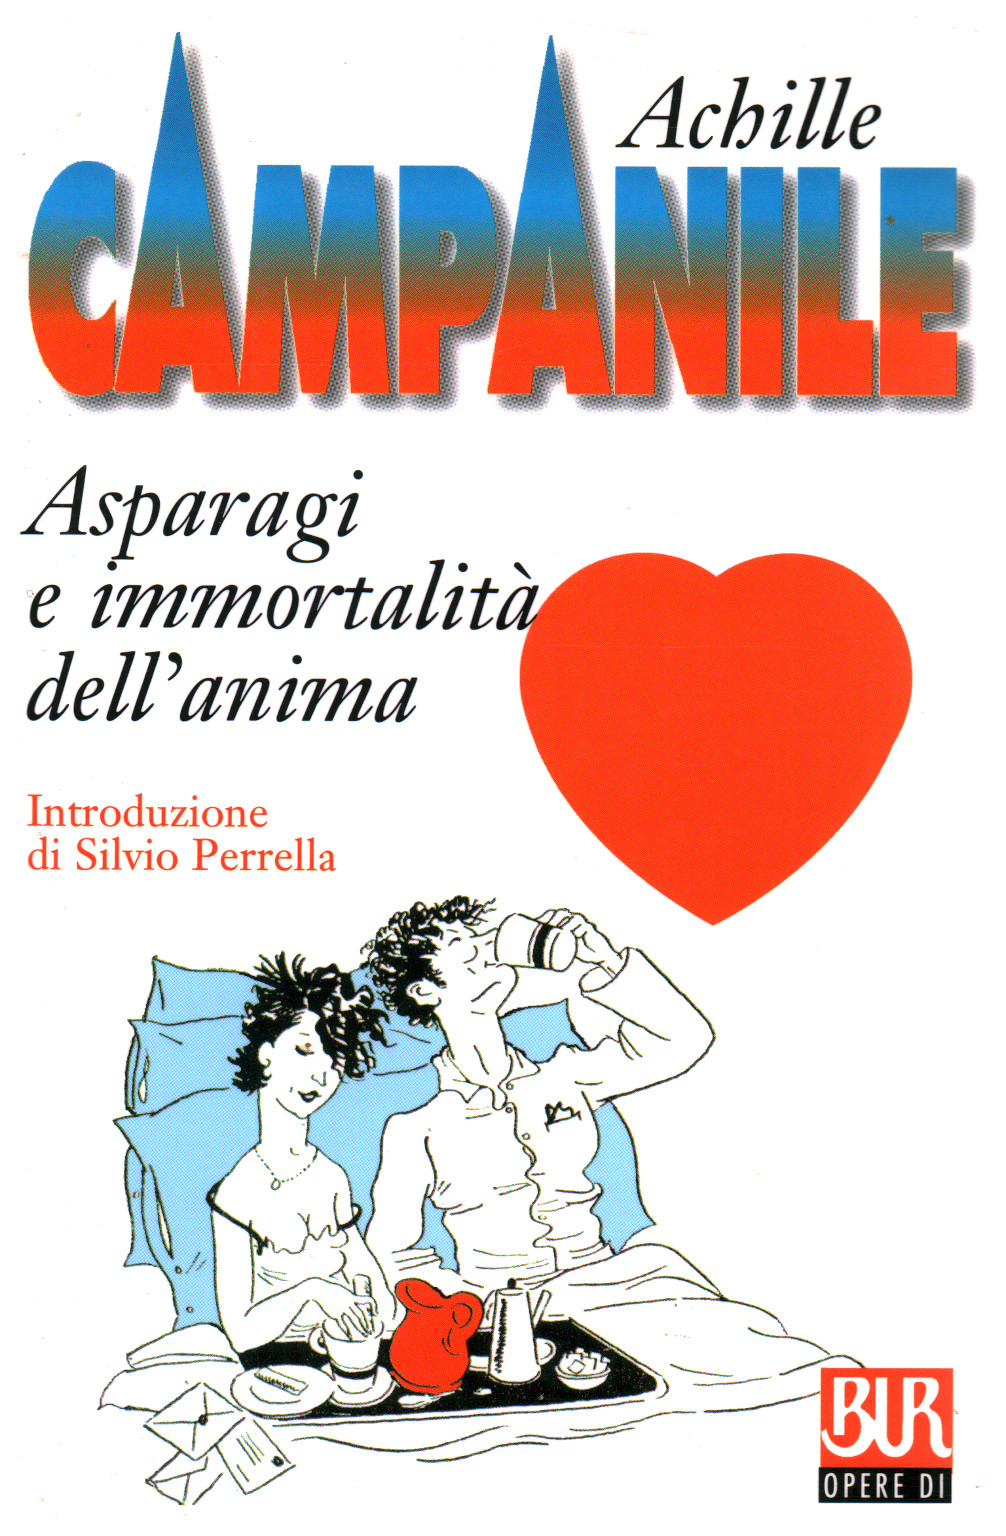 Asparagi e immortalitÃ dell'anima - Achille Campanile